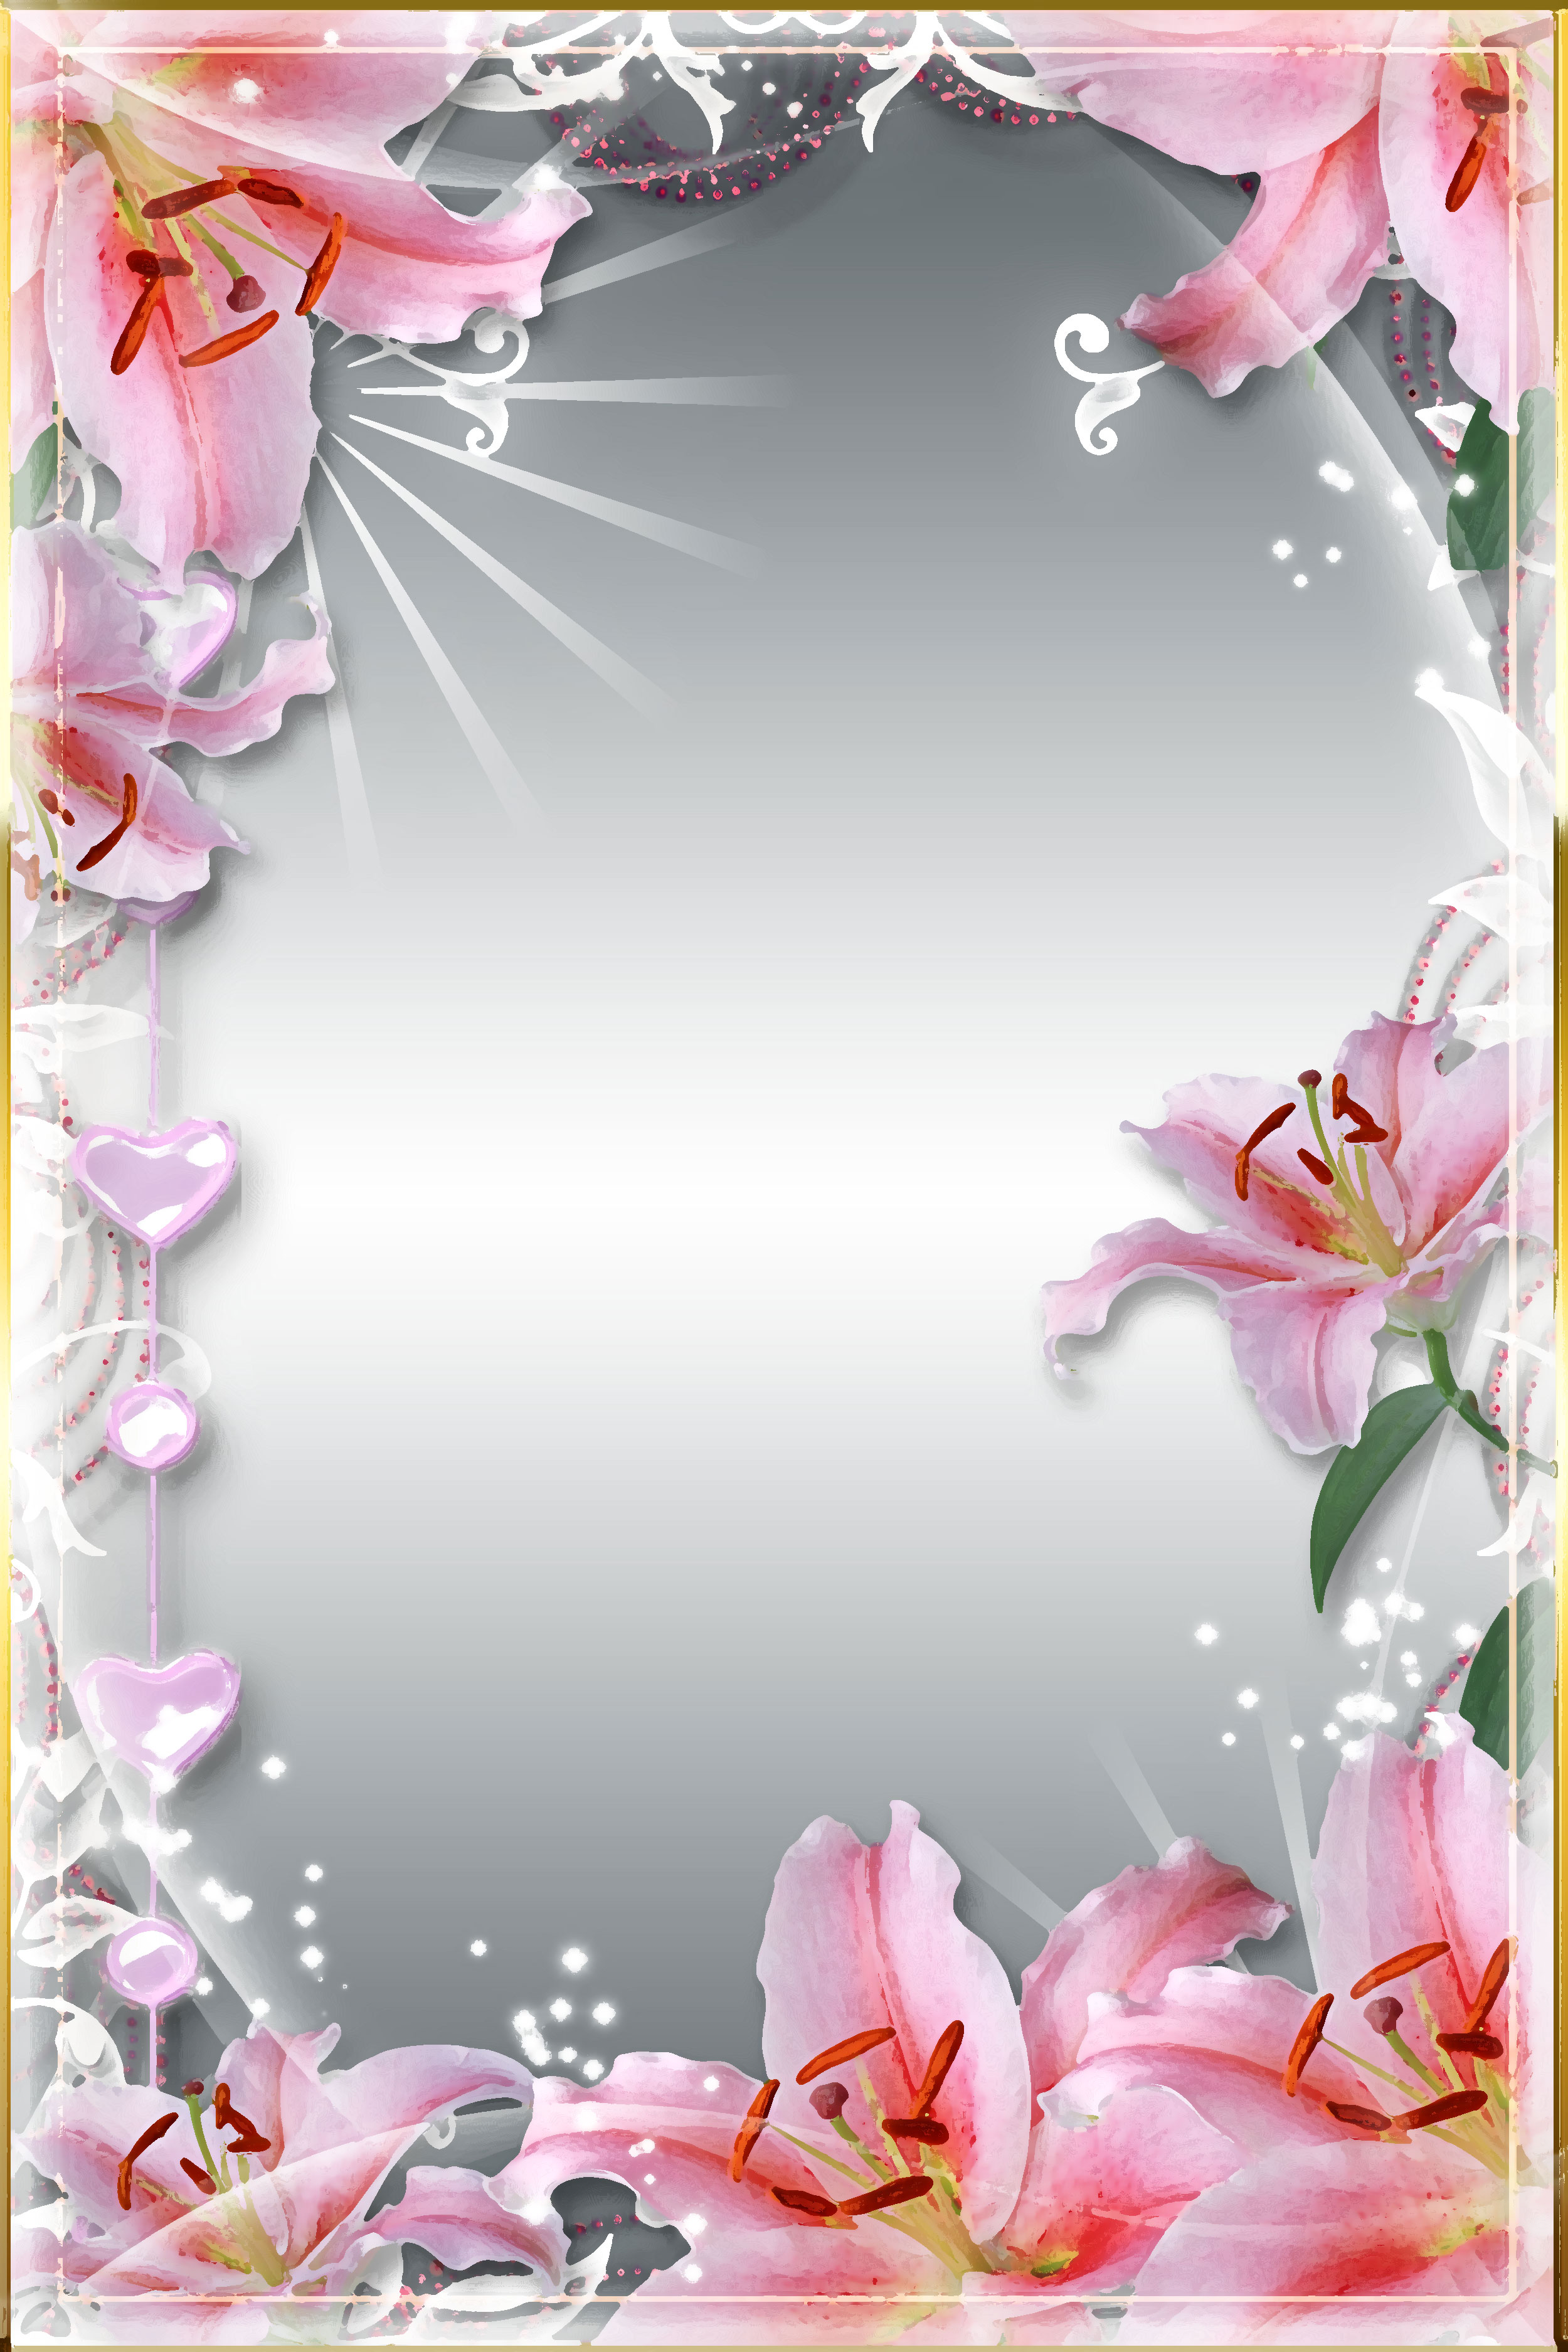 壁紙 背景イラスト 花のフレーム 外枠 No 140 ピンクのユリ ハート